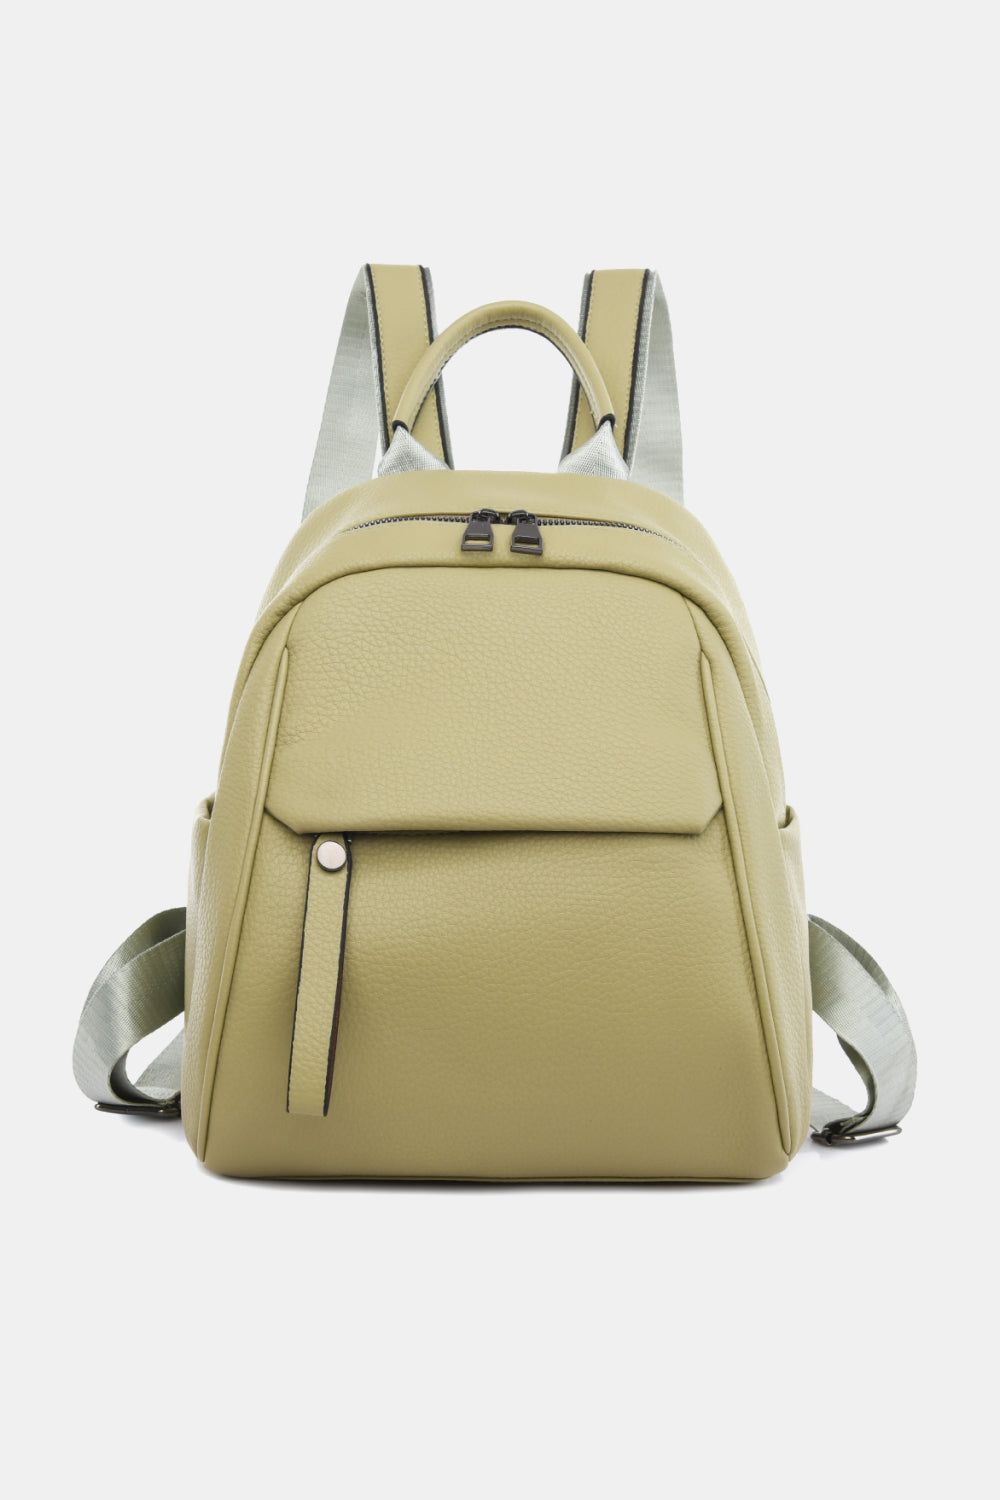 Medium PU Leather Backpack.